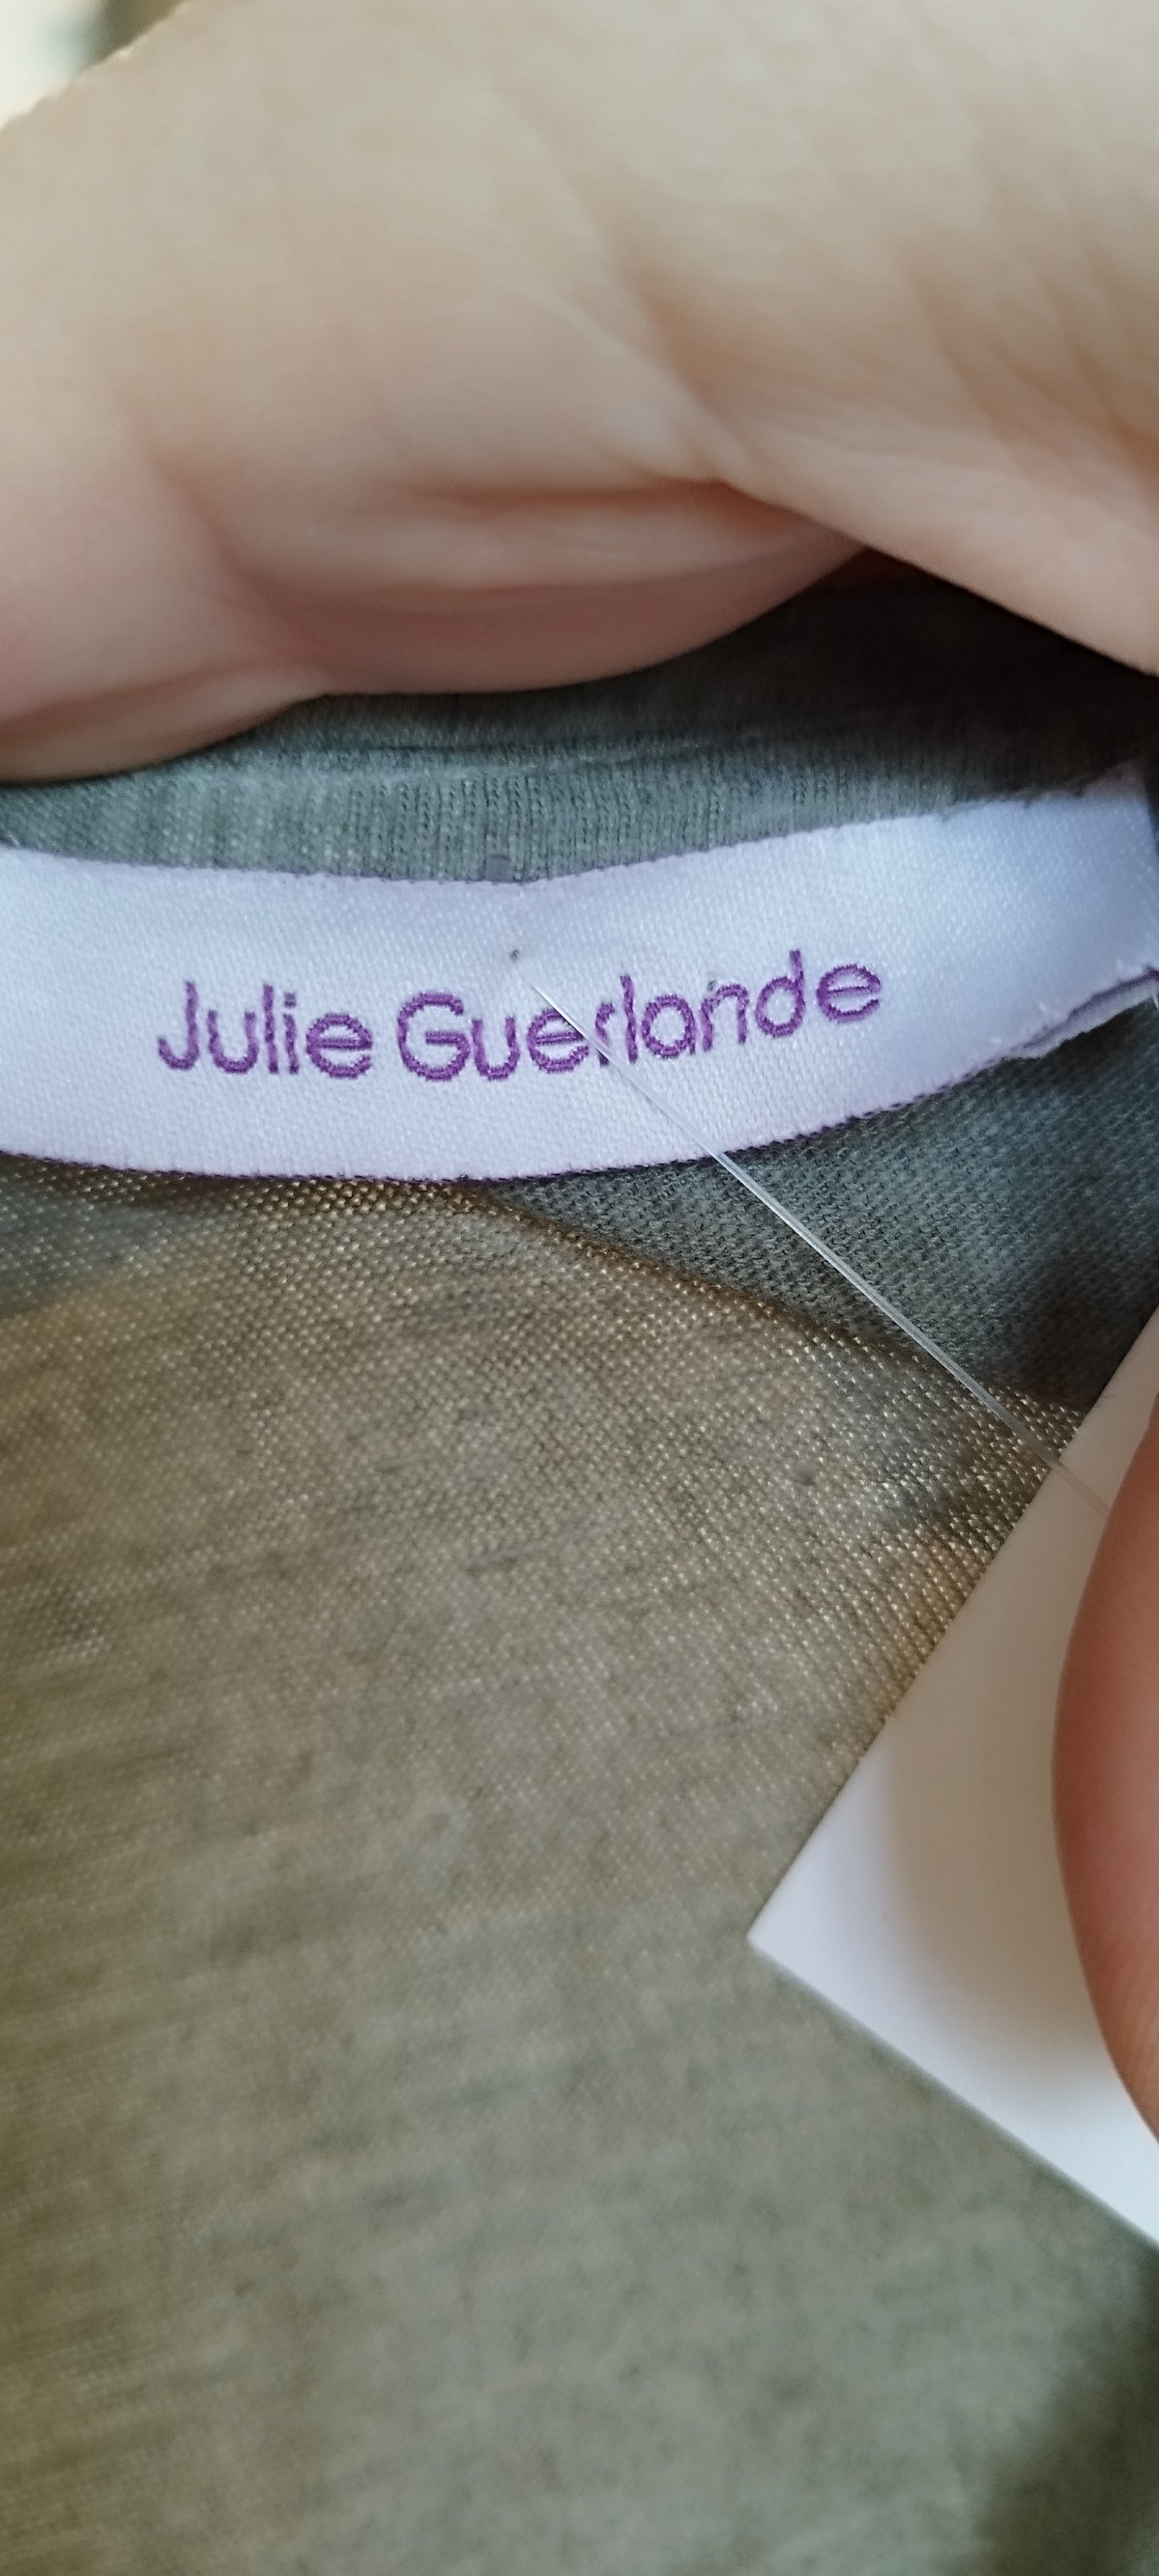 T-shirt Julie Guerlande